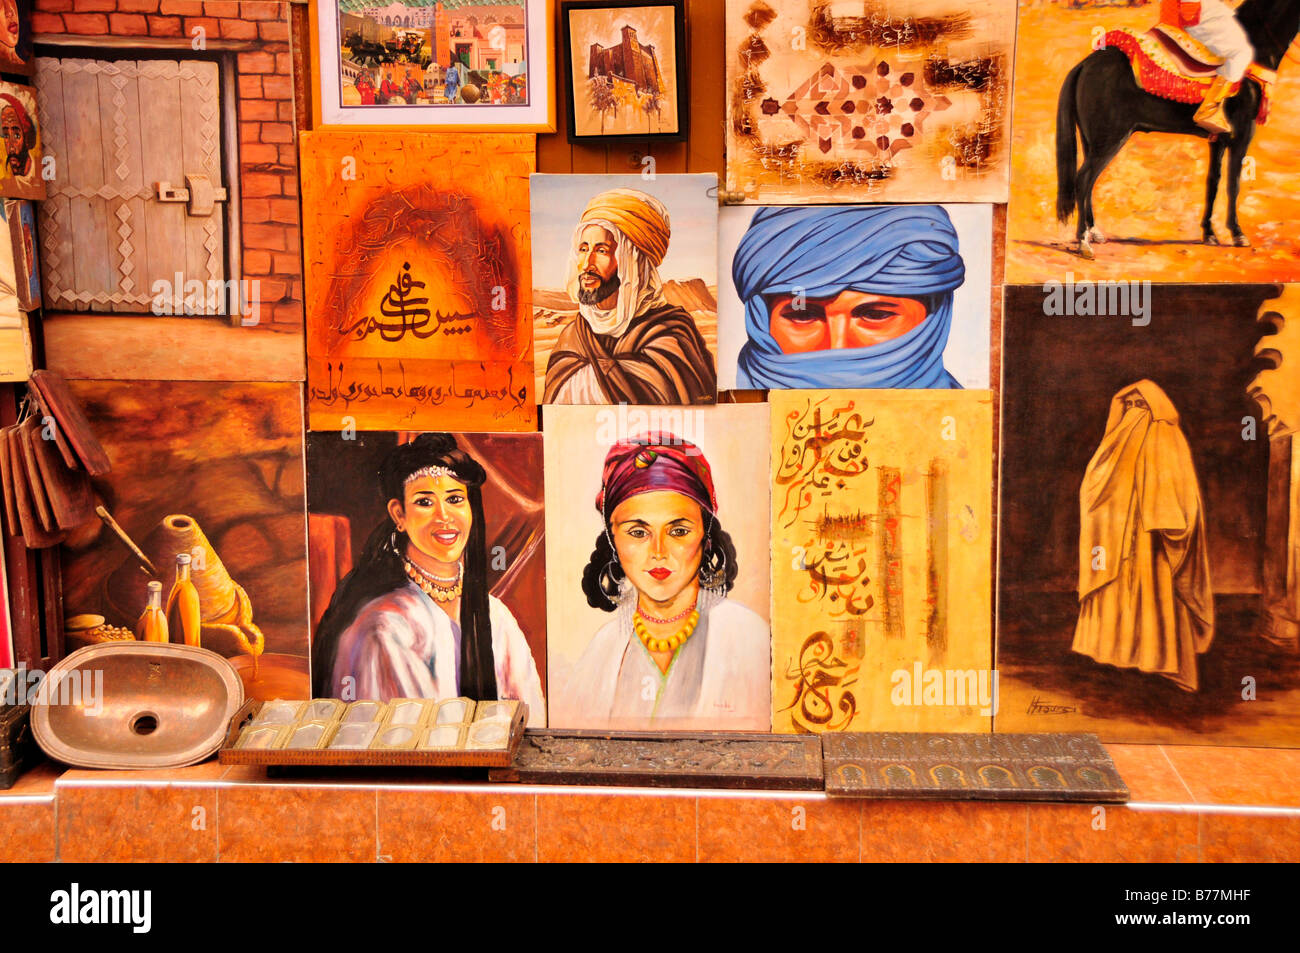 Artista vende le sue foto al souk, mercato, nella medina di Marrakech, Marocco, Africa Foto Stock